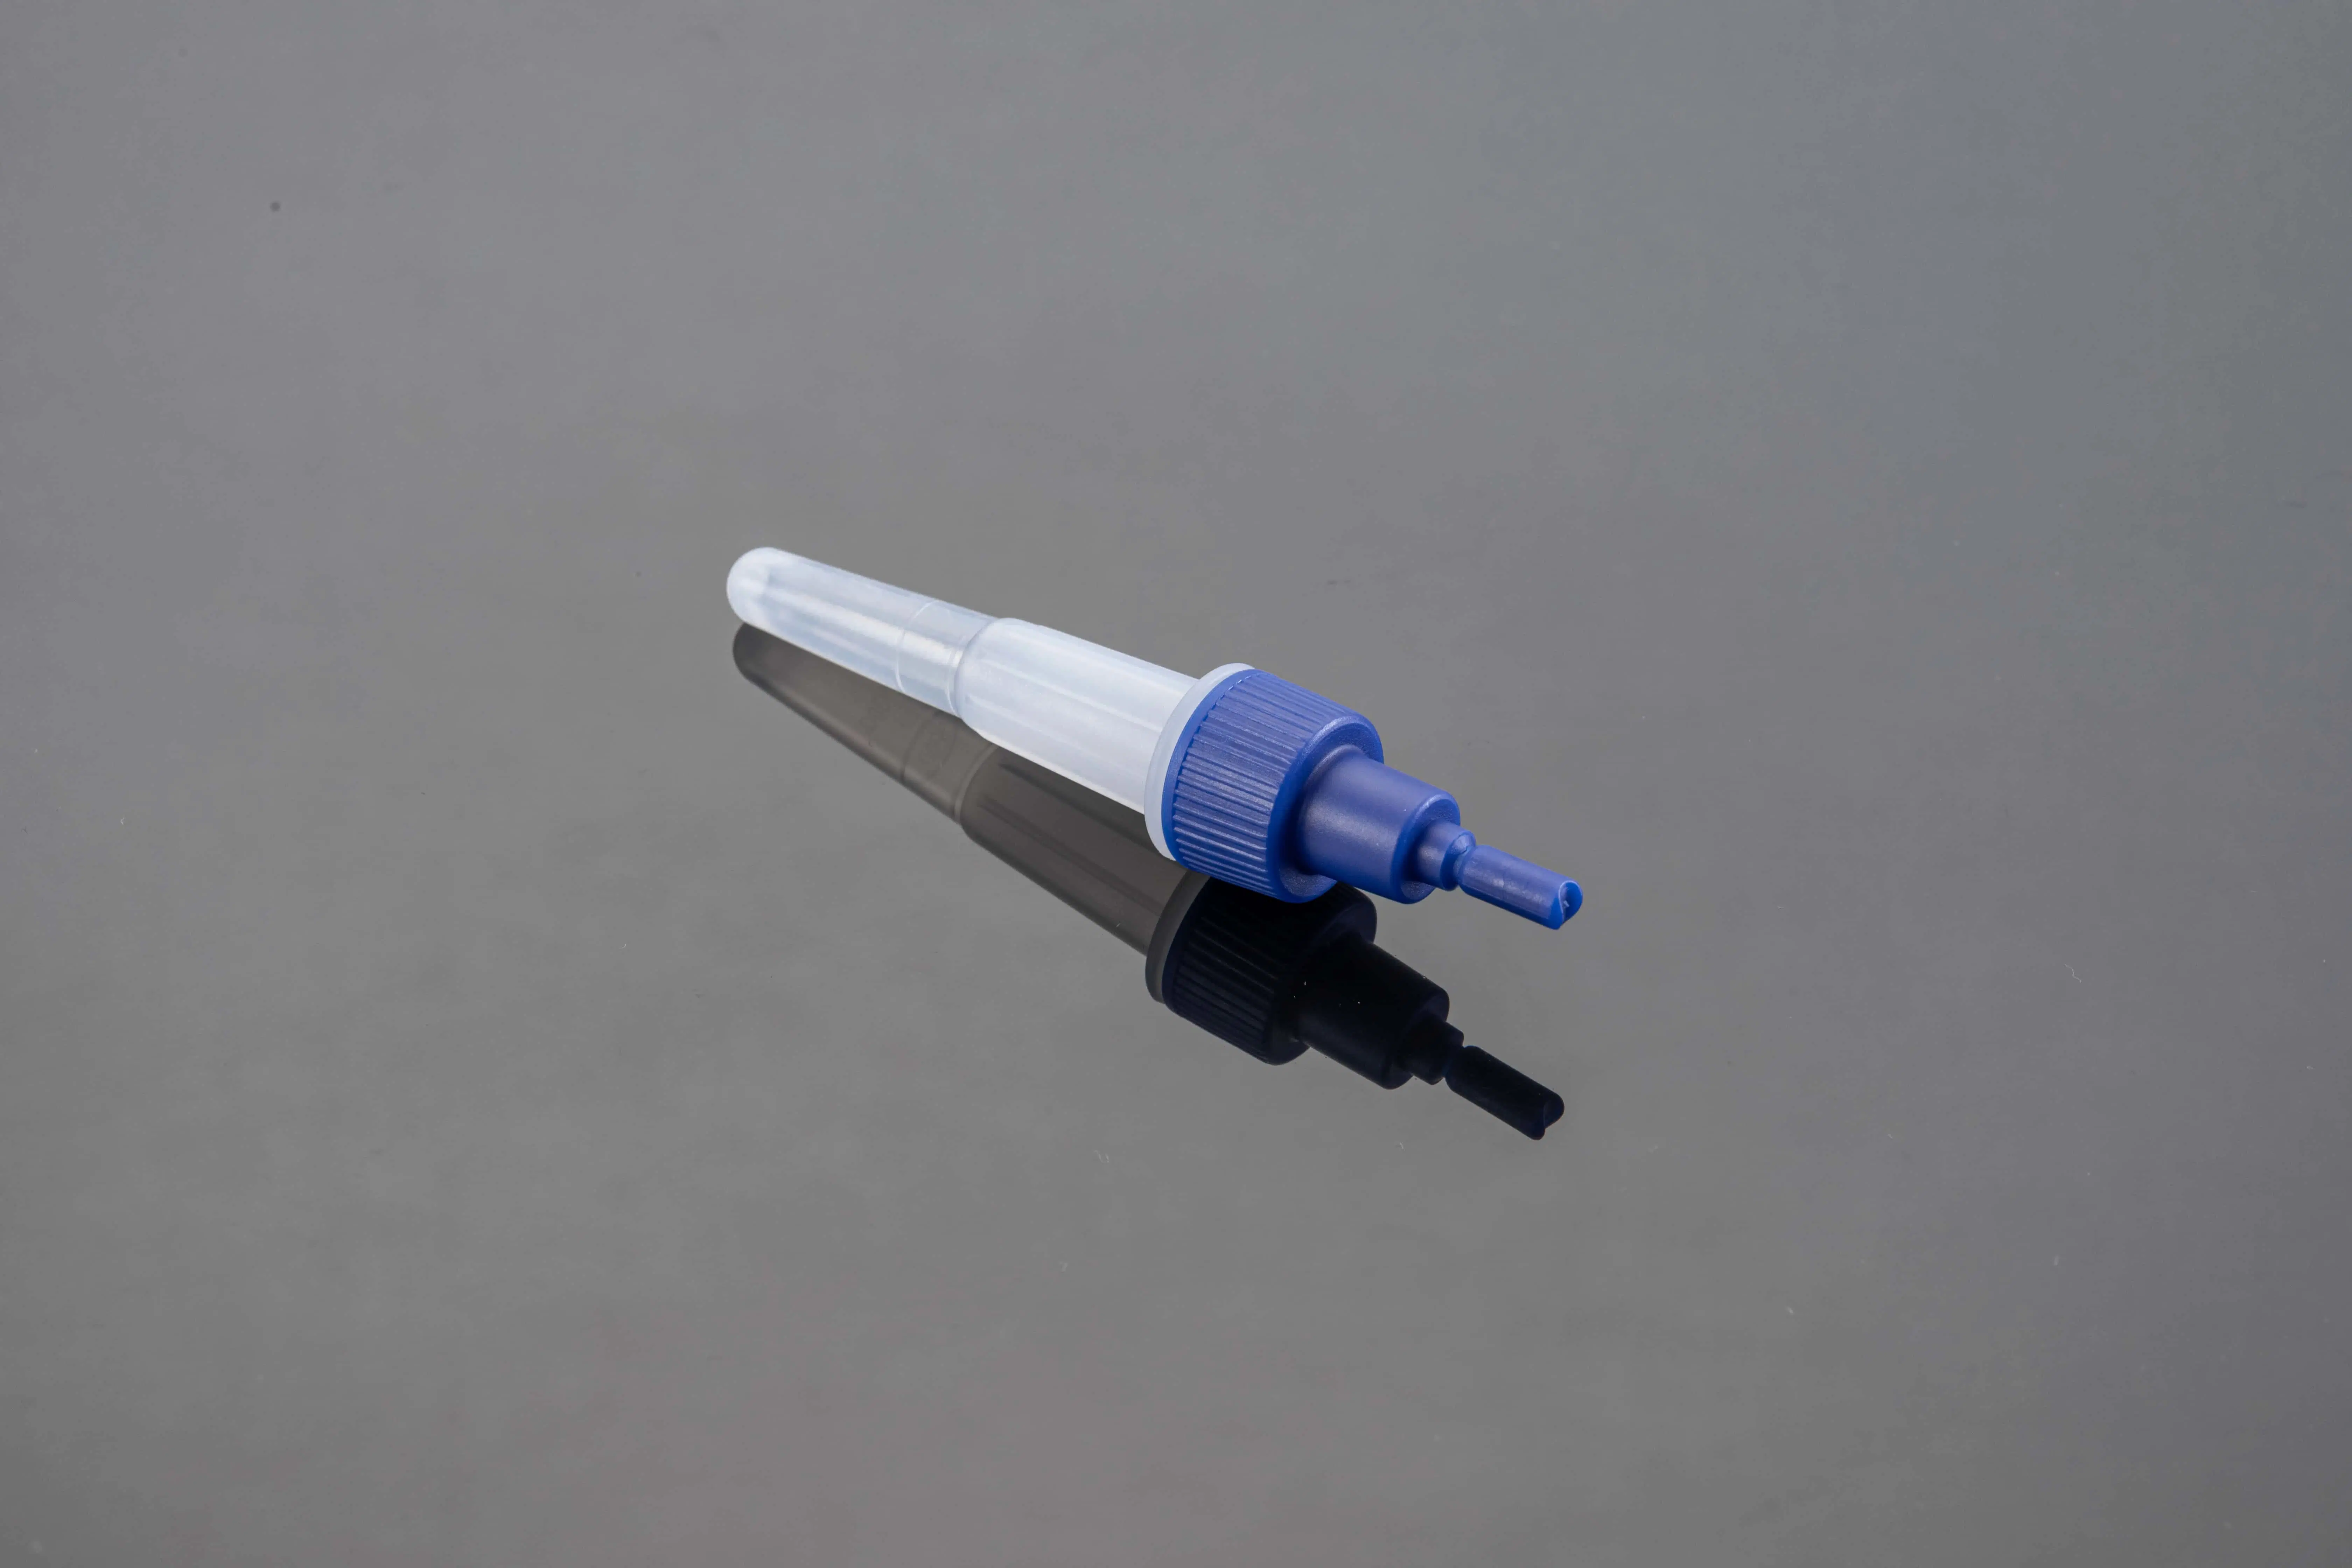 المجموعة الطبية القابلة للاستخدام المتعدد البلاستيك الشفاف أنبوب استخراج المعادن من أجل Rapid Antigen Diagnostic Test Tube 2 مل (أنبوب اختبار تشخيصي سريع لم